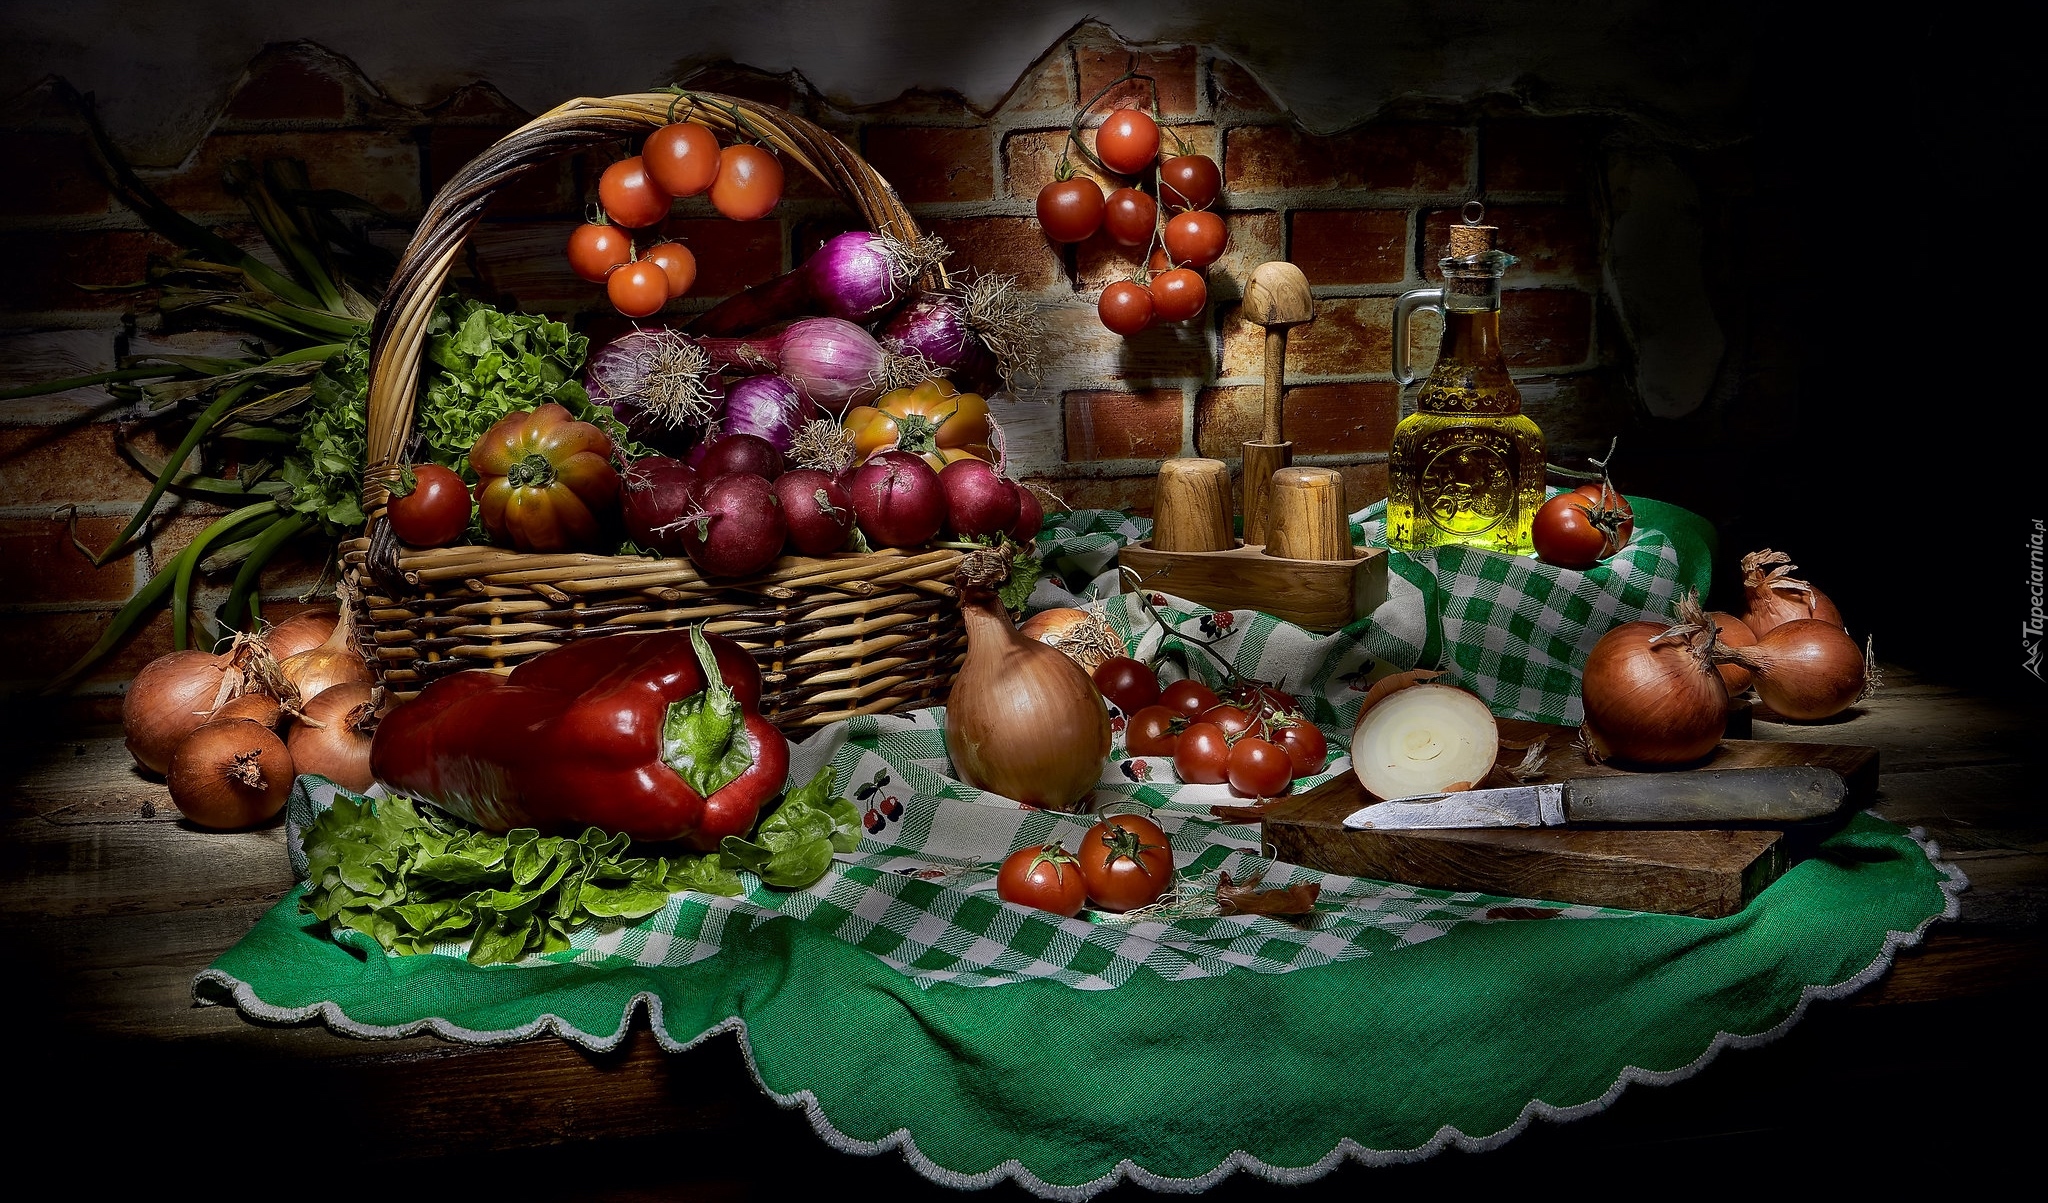 Warzywa, Papryka, Cebula, Pomidory, Buraki, Sałata, Koszyk, Nóż, Przyprawy, Sól, Pieprz, Olej, Serweta, Kompozycja